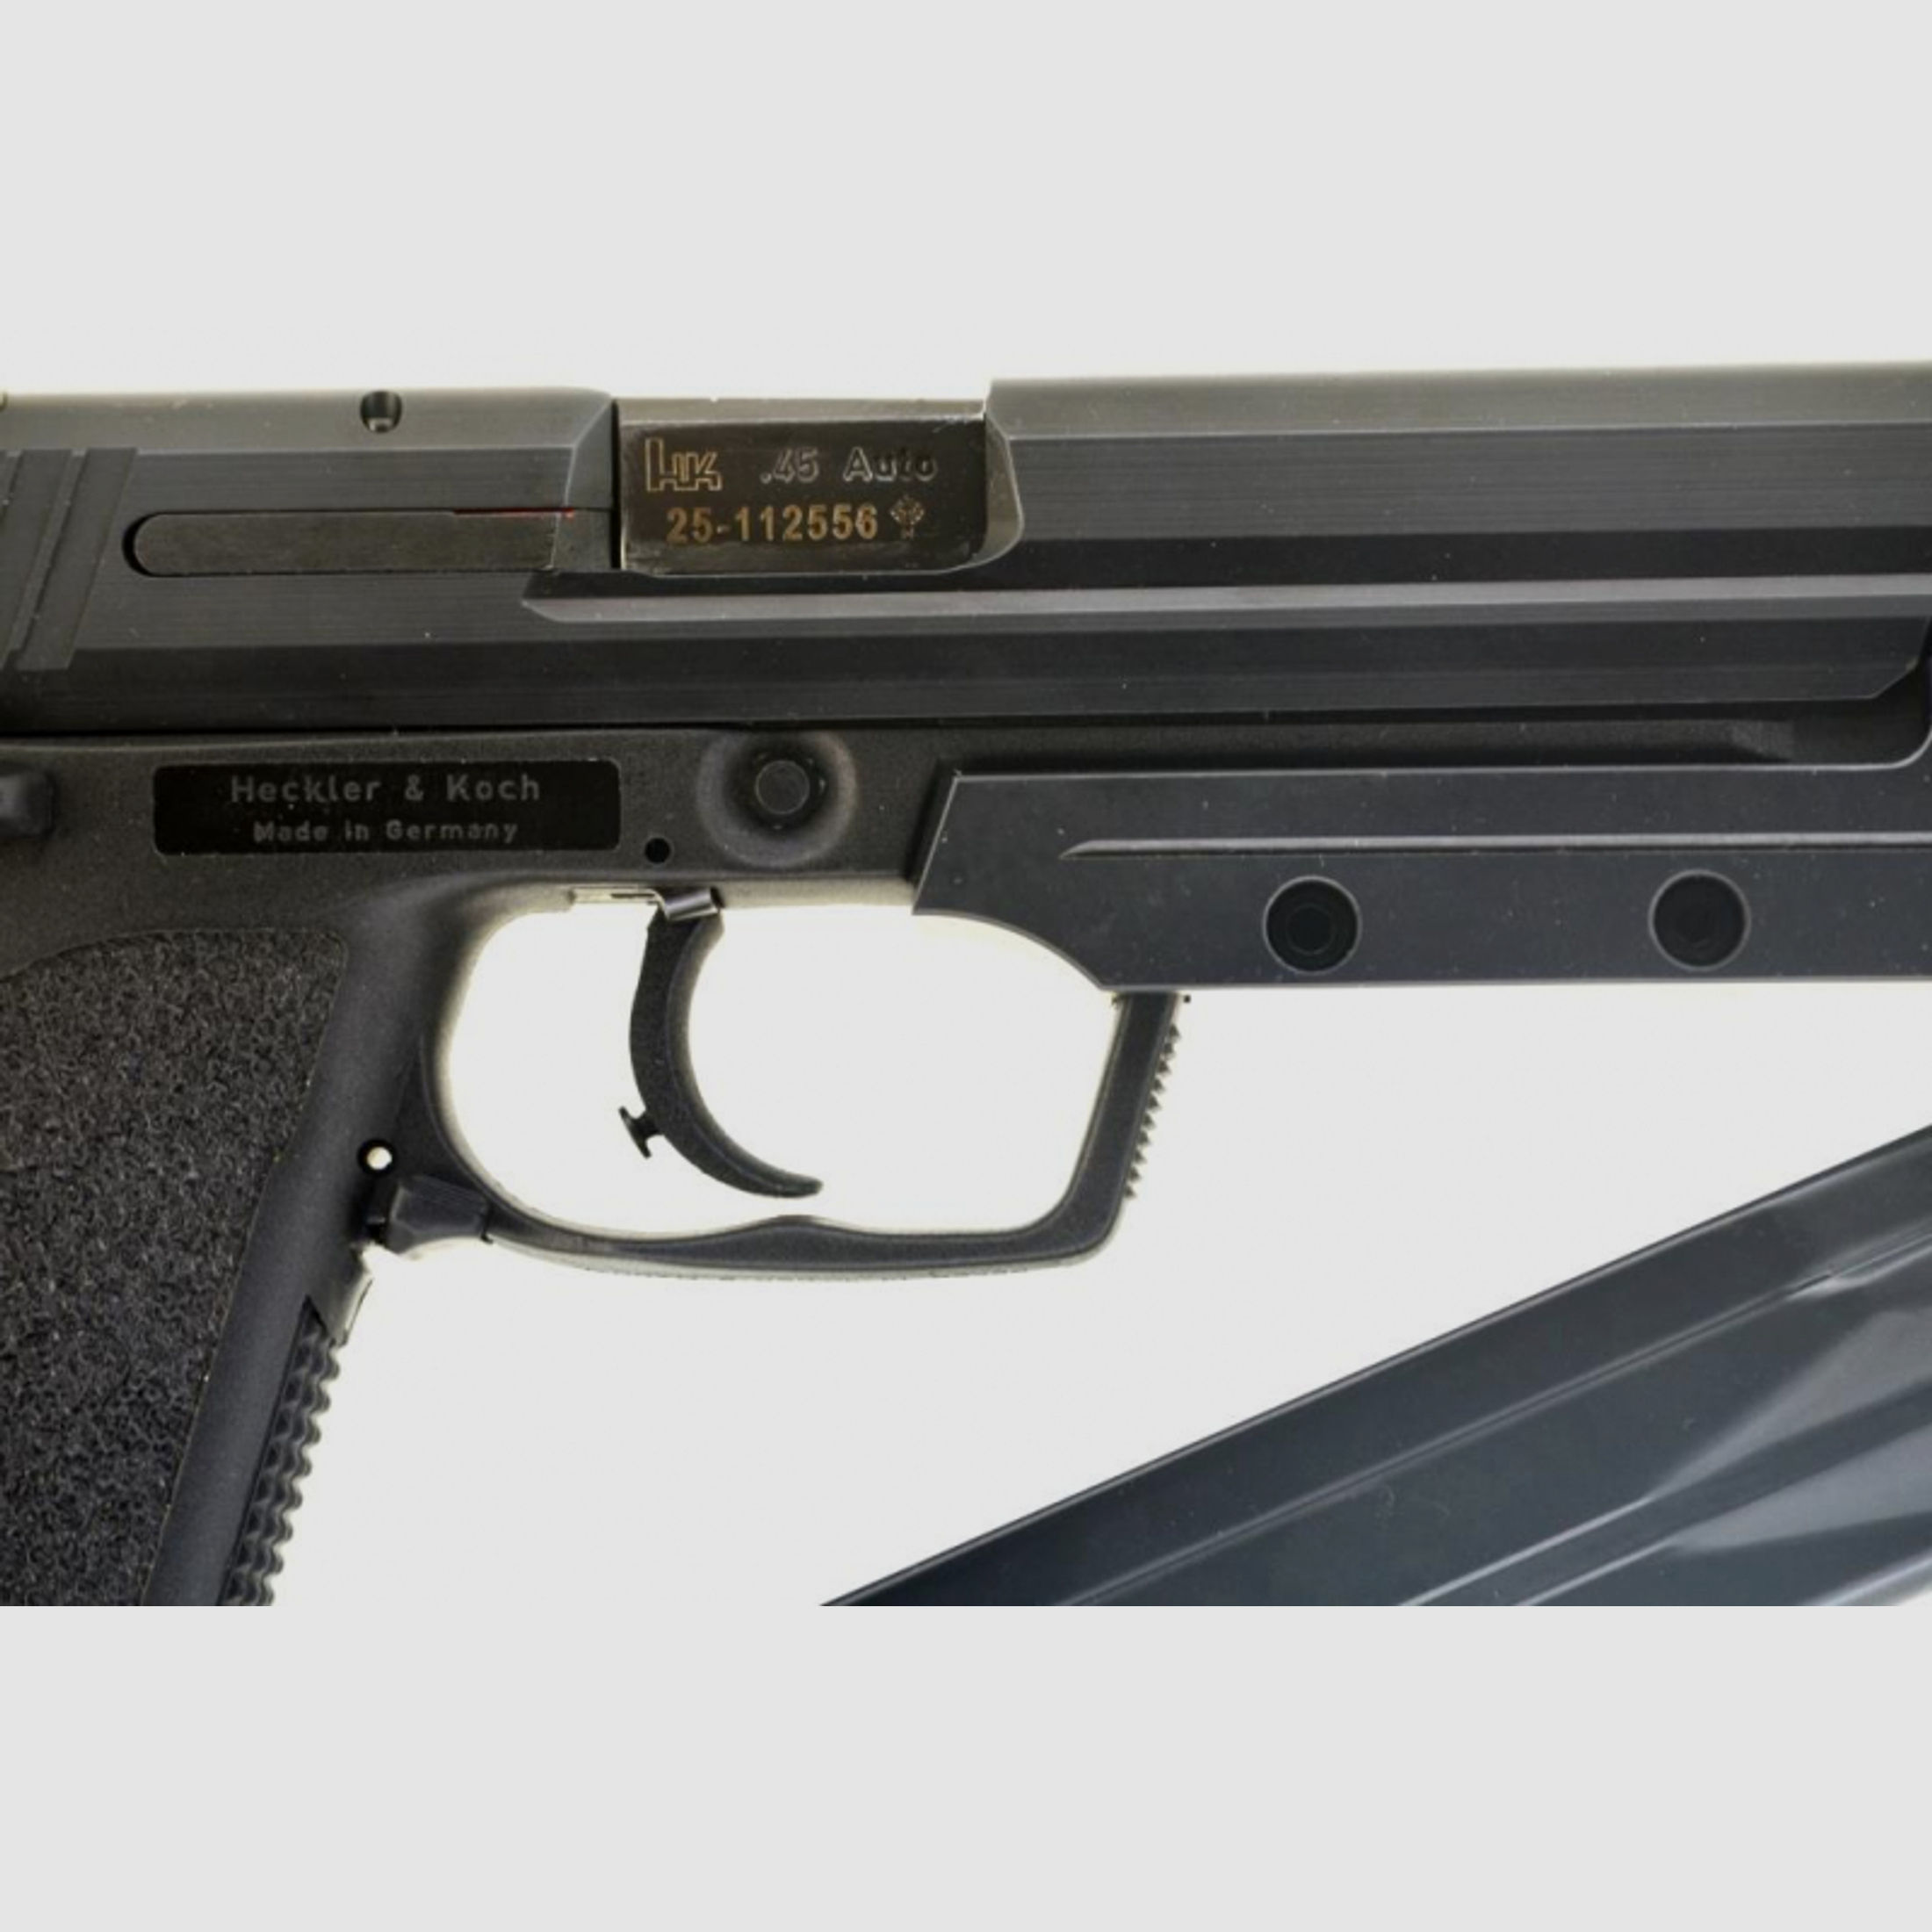 Halbautomatische Pistole Sportpistole Heckler & Koch USP Elite mit Merkle Tuning Kaliber .45 ACP 1a!